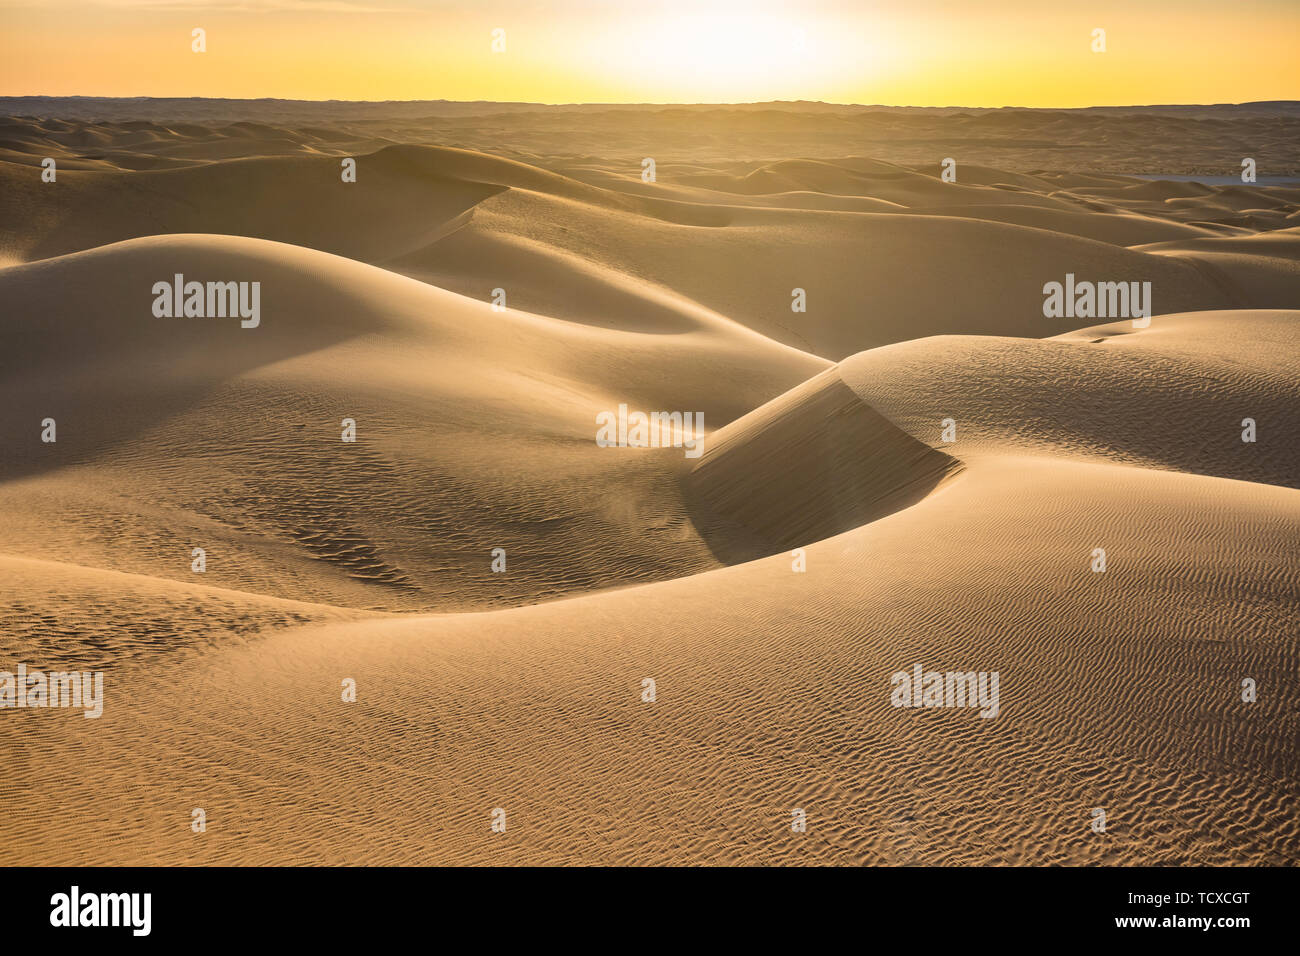 Puesta de sol en las dunas gigantes del desierto del Sahara, Timimoun, Argelia occidental, norte de África, África Foto de stock